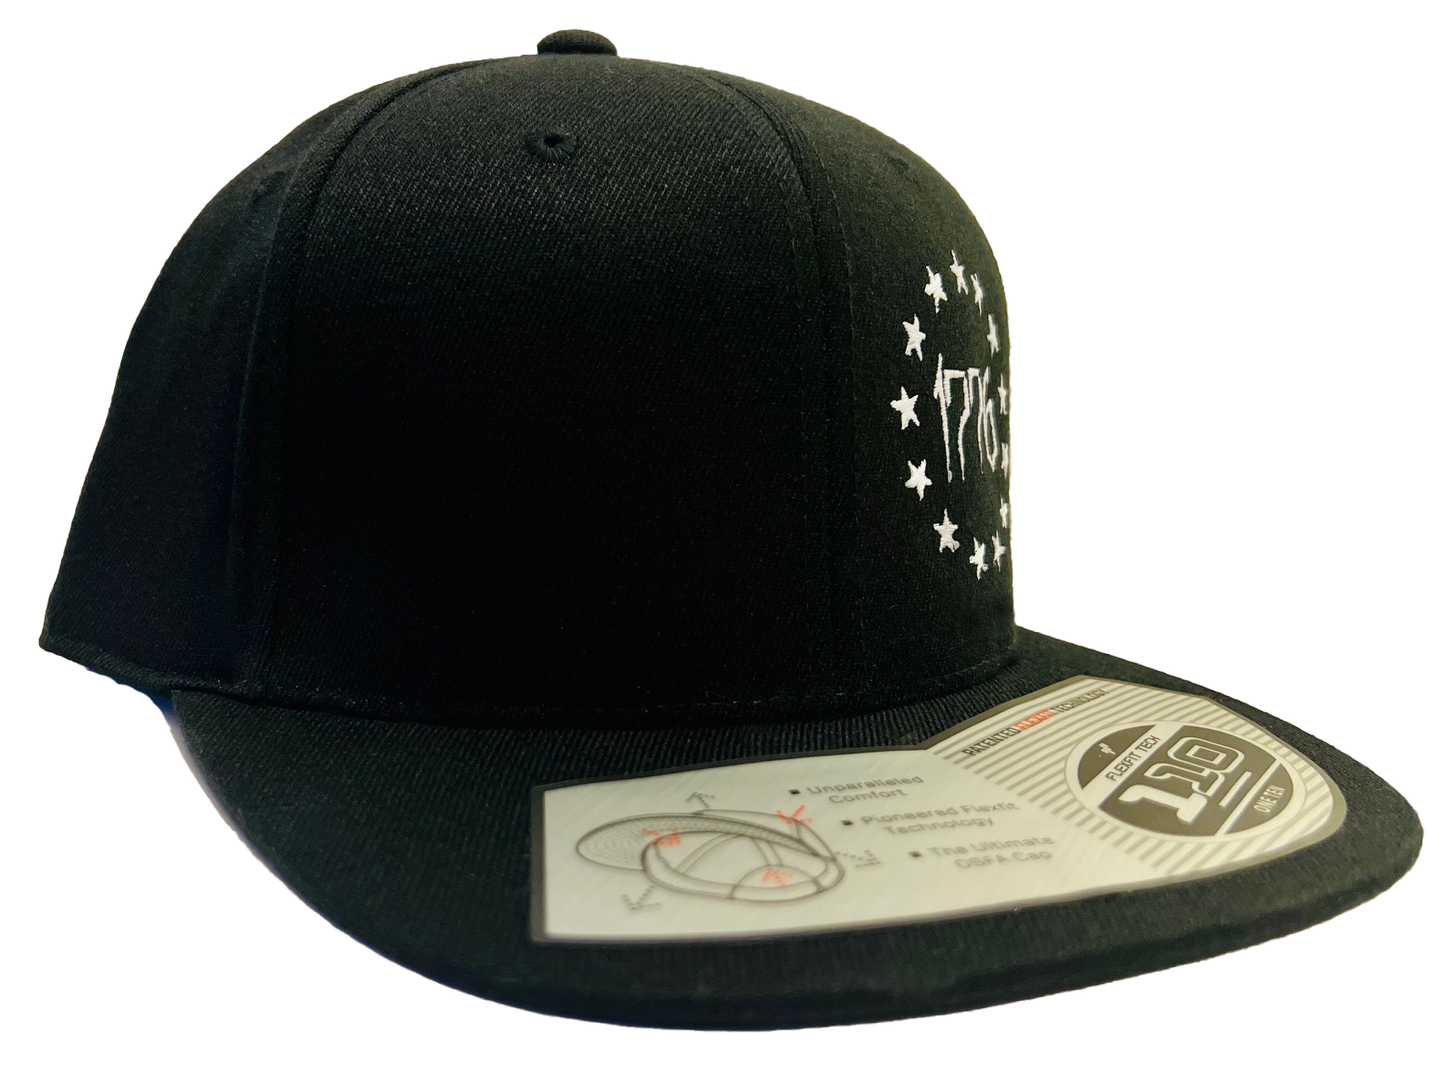 KS 1776 Tactical - Trucker SnapBack Flexfit Black Hat